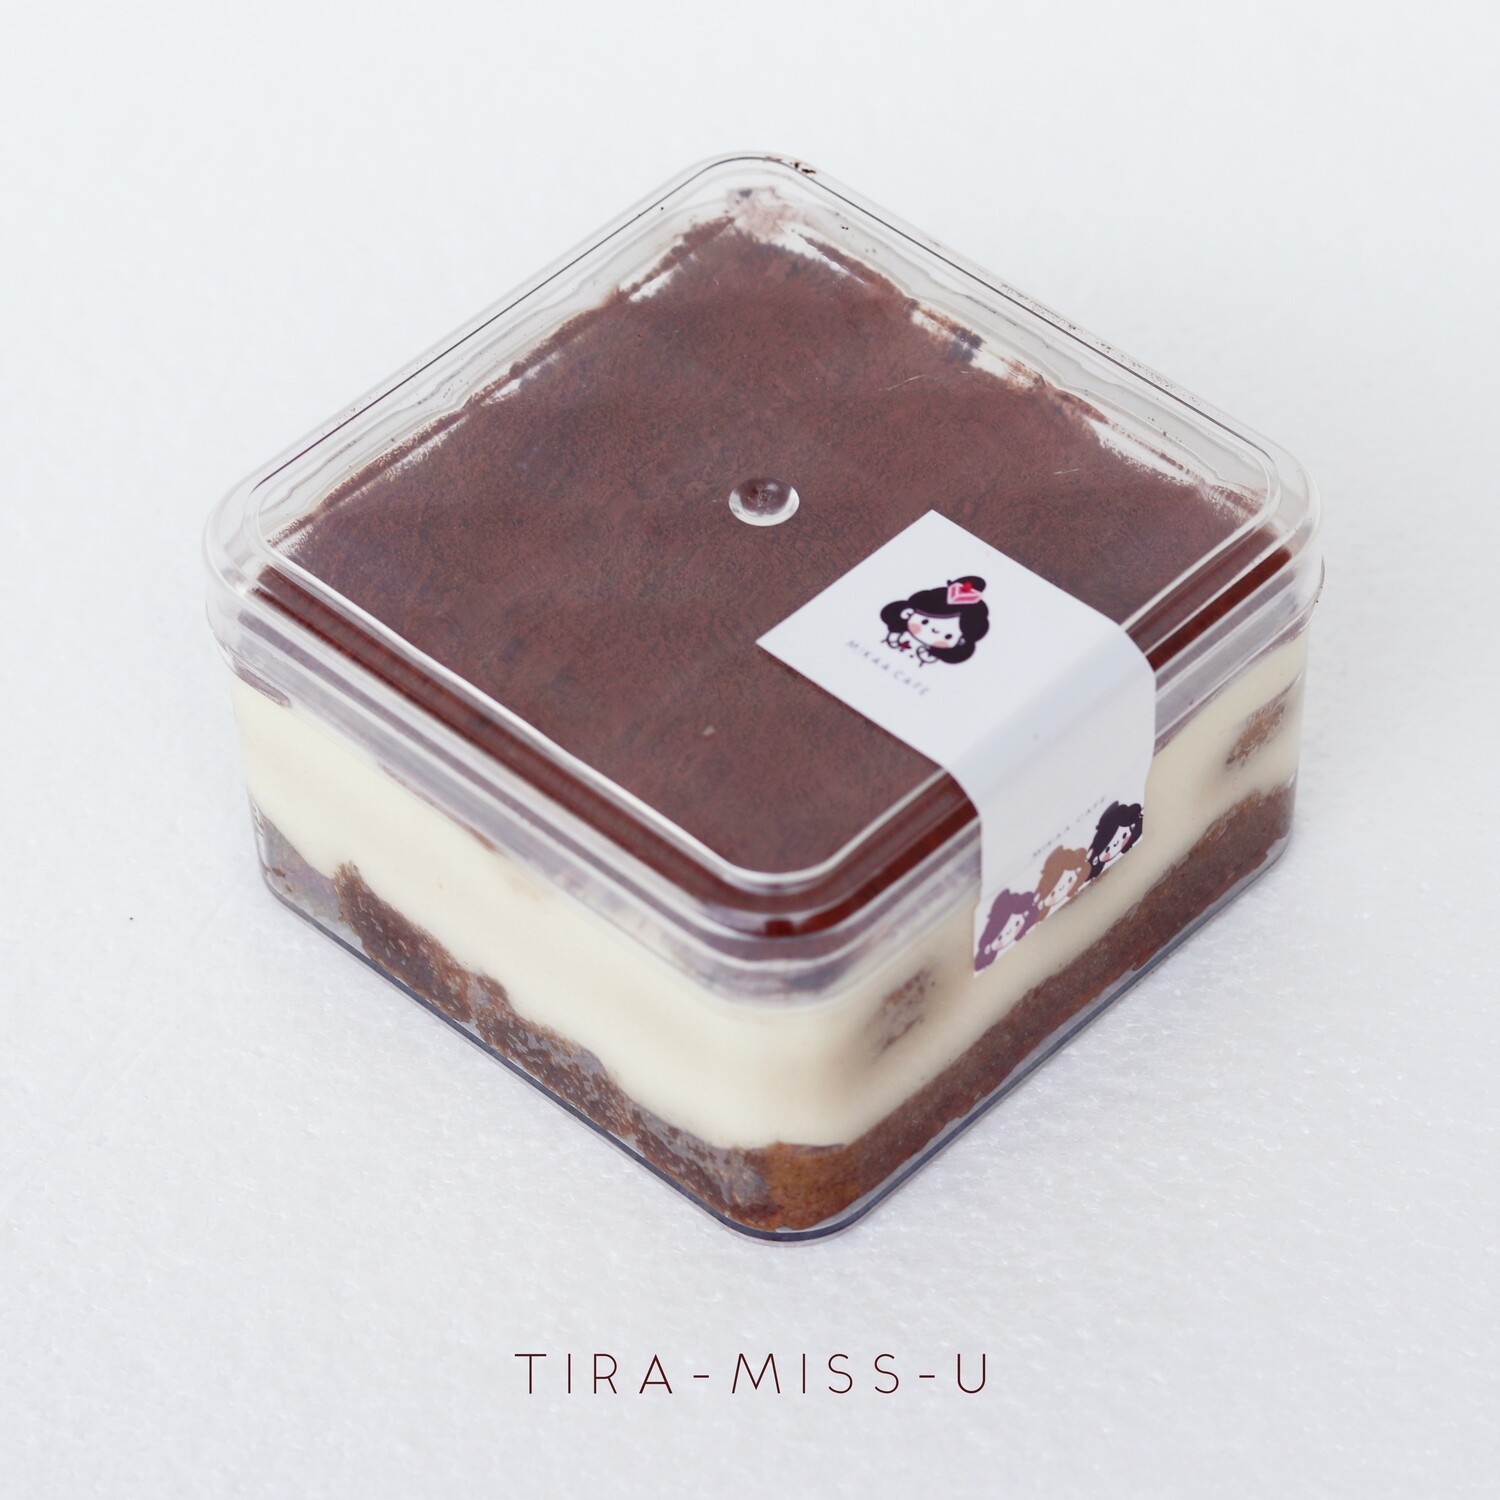 Tira-Miss-U